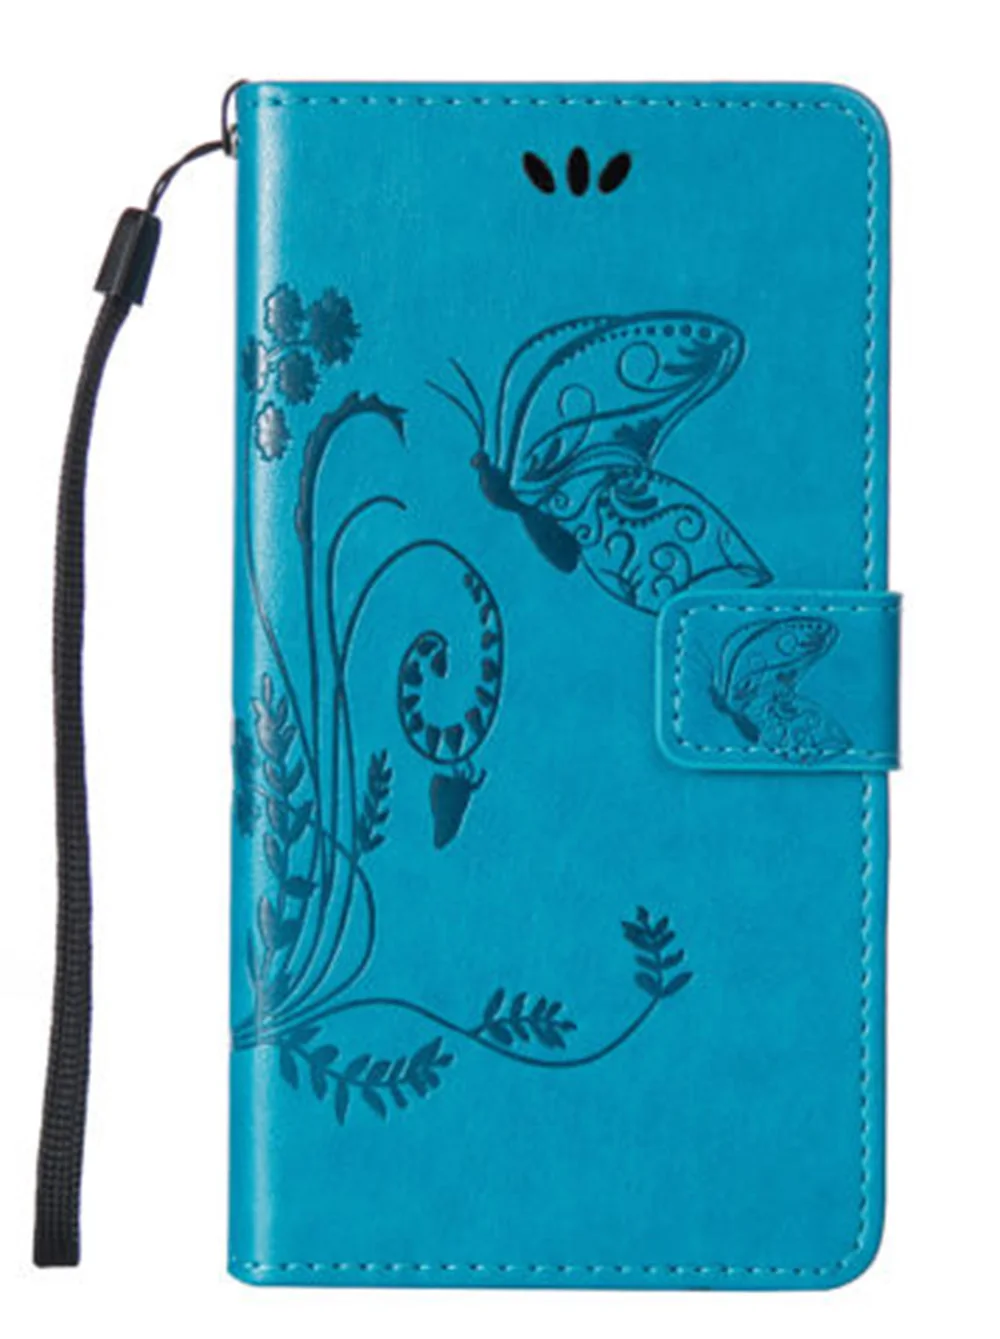 Кожаный чехол-книжка с отделениями для карт и Тарельчатая Крышка для Oukitel K6000 K4000 U11 U20 U7 U15 Plus Pro Lite K5000 K5 K3 C8 U13 U15S чехол - Цвет: blue